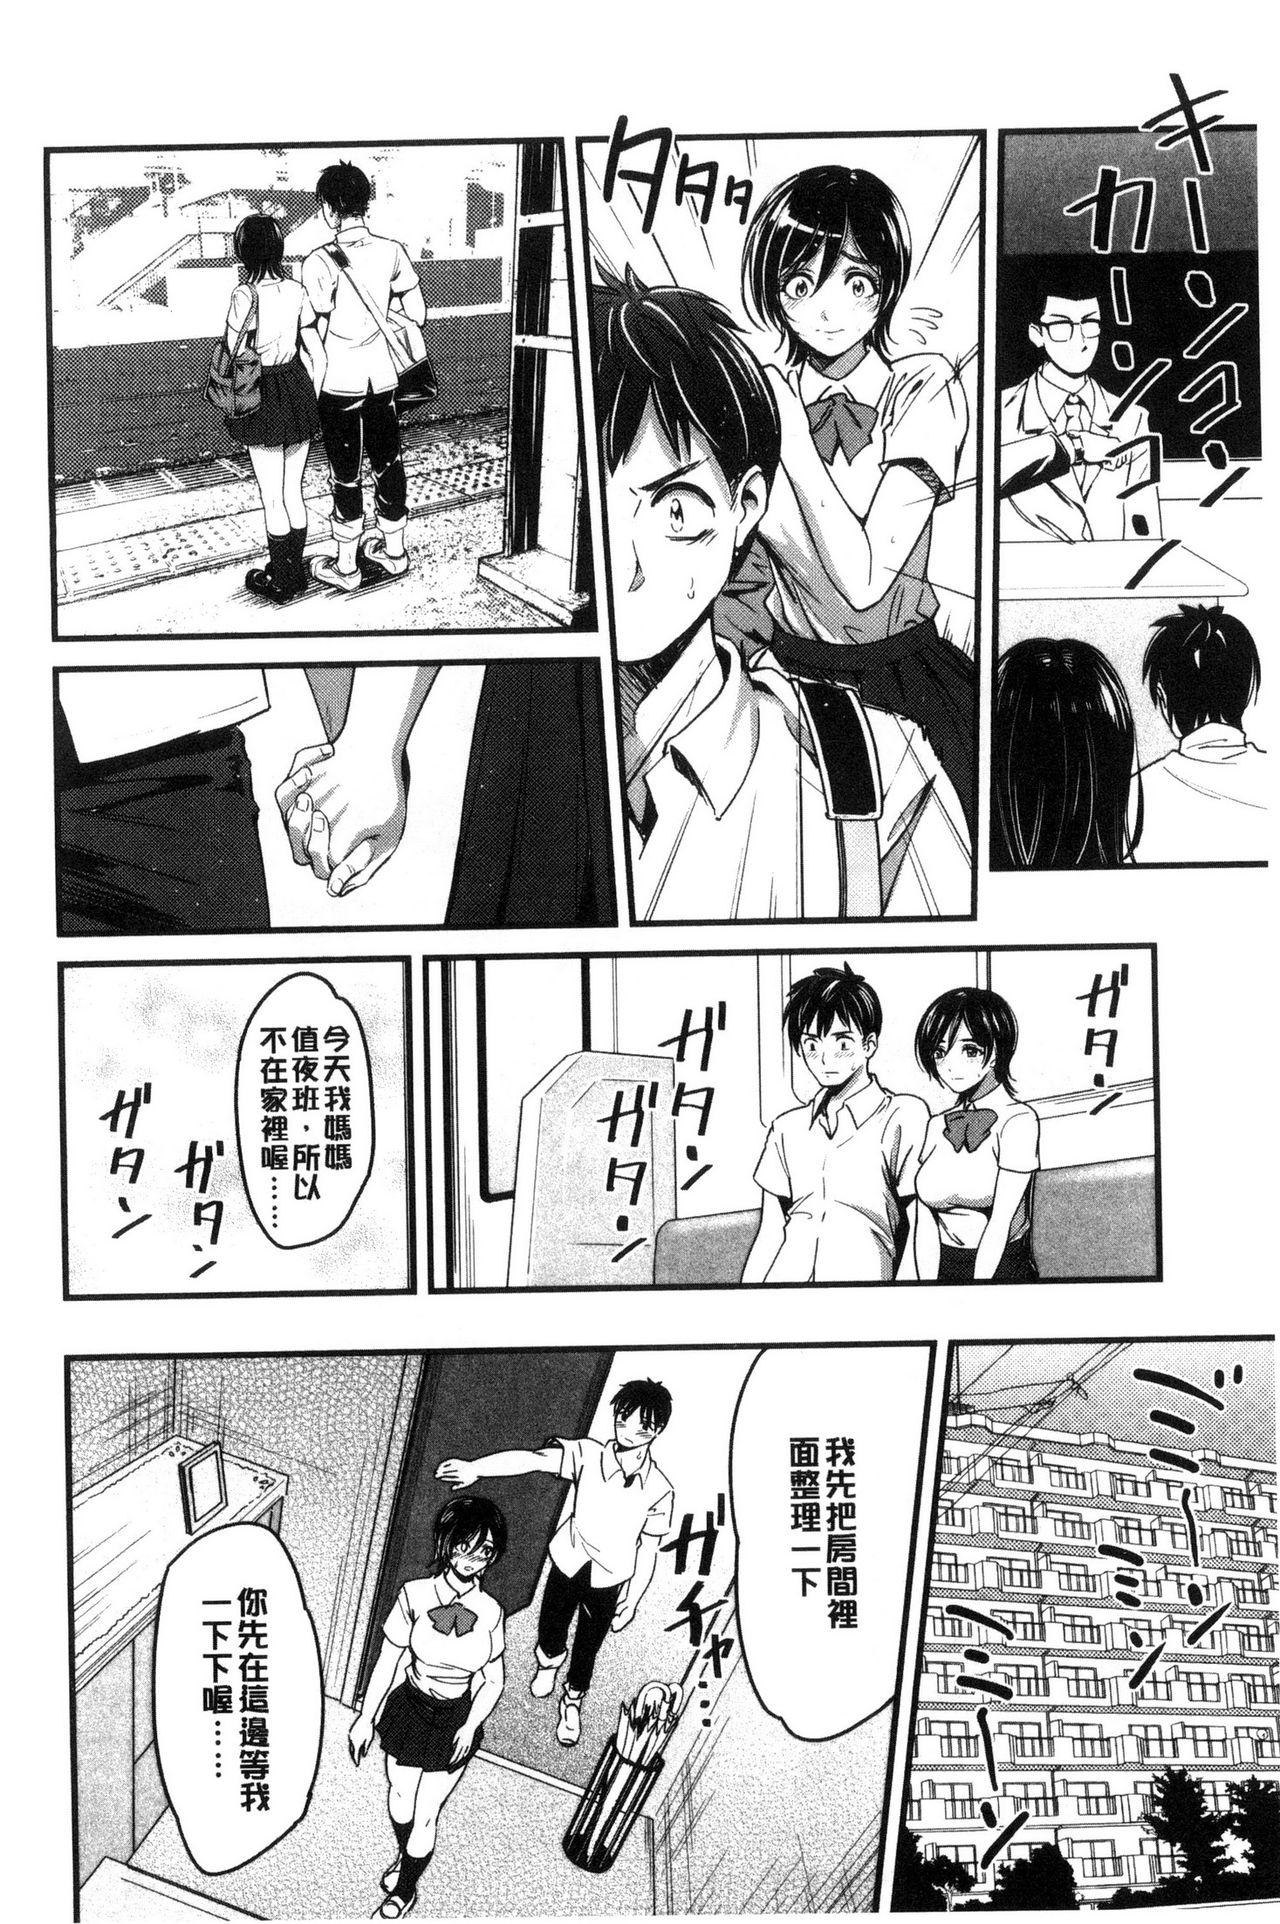 Seifuku no Mama Aishinasai! - Love in school uniform 11